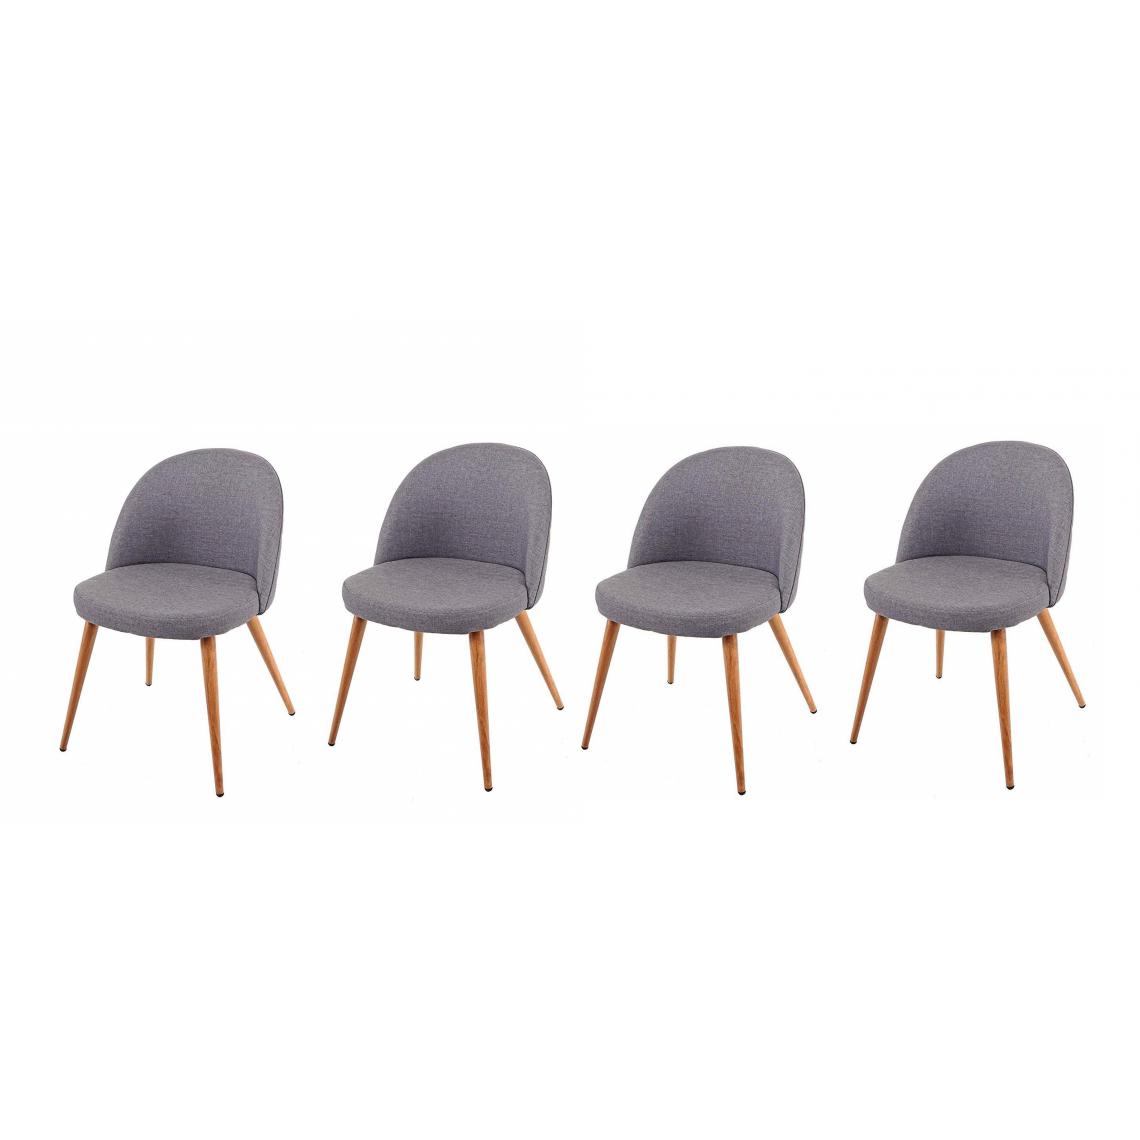 Decoshop26 - Lot de 4 chaises de salle à manger gris foncé pieds en bois style rétro CDS04515 - Chaises